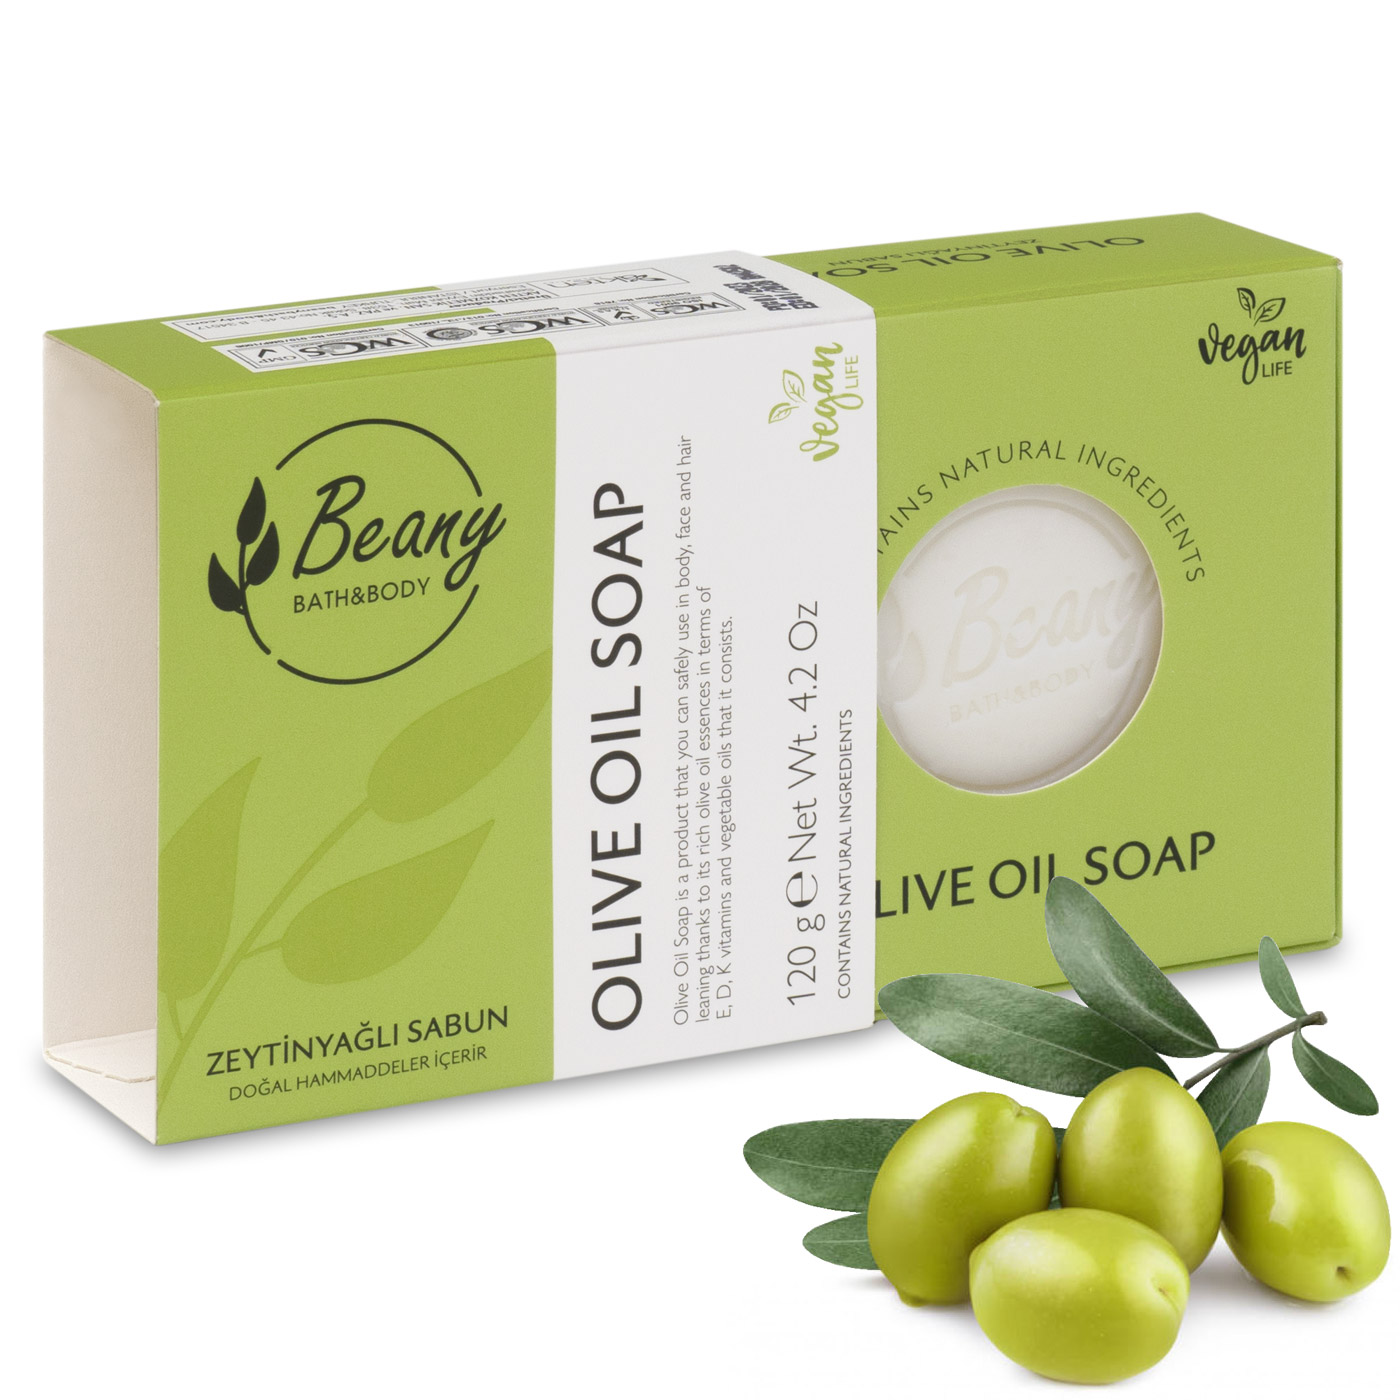 Мыло Beany твердое натуральное турецкое Olive Oil Soap с оливковым маслом мыло biomio vegan soap aromatherapy гранат и базилик натуральное 90 г